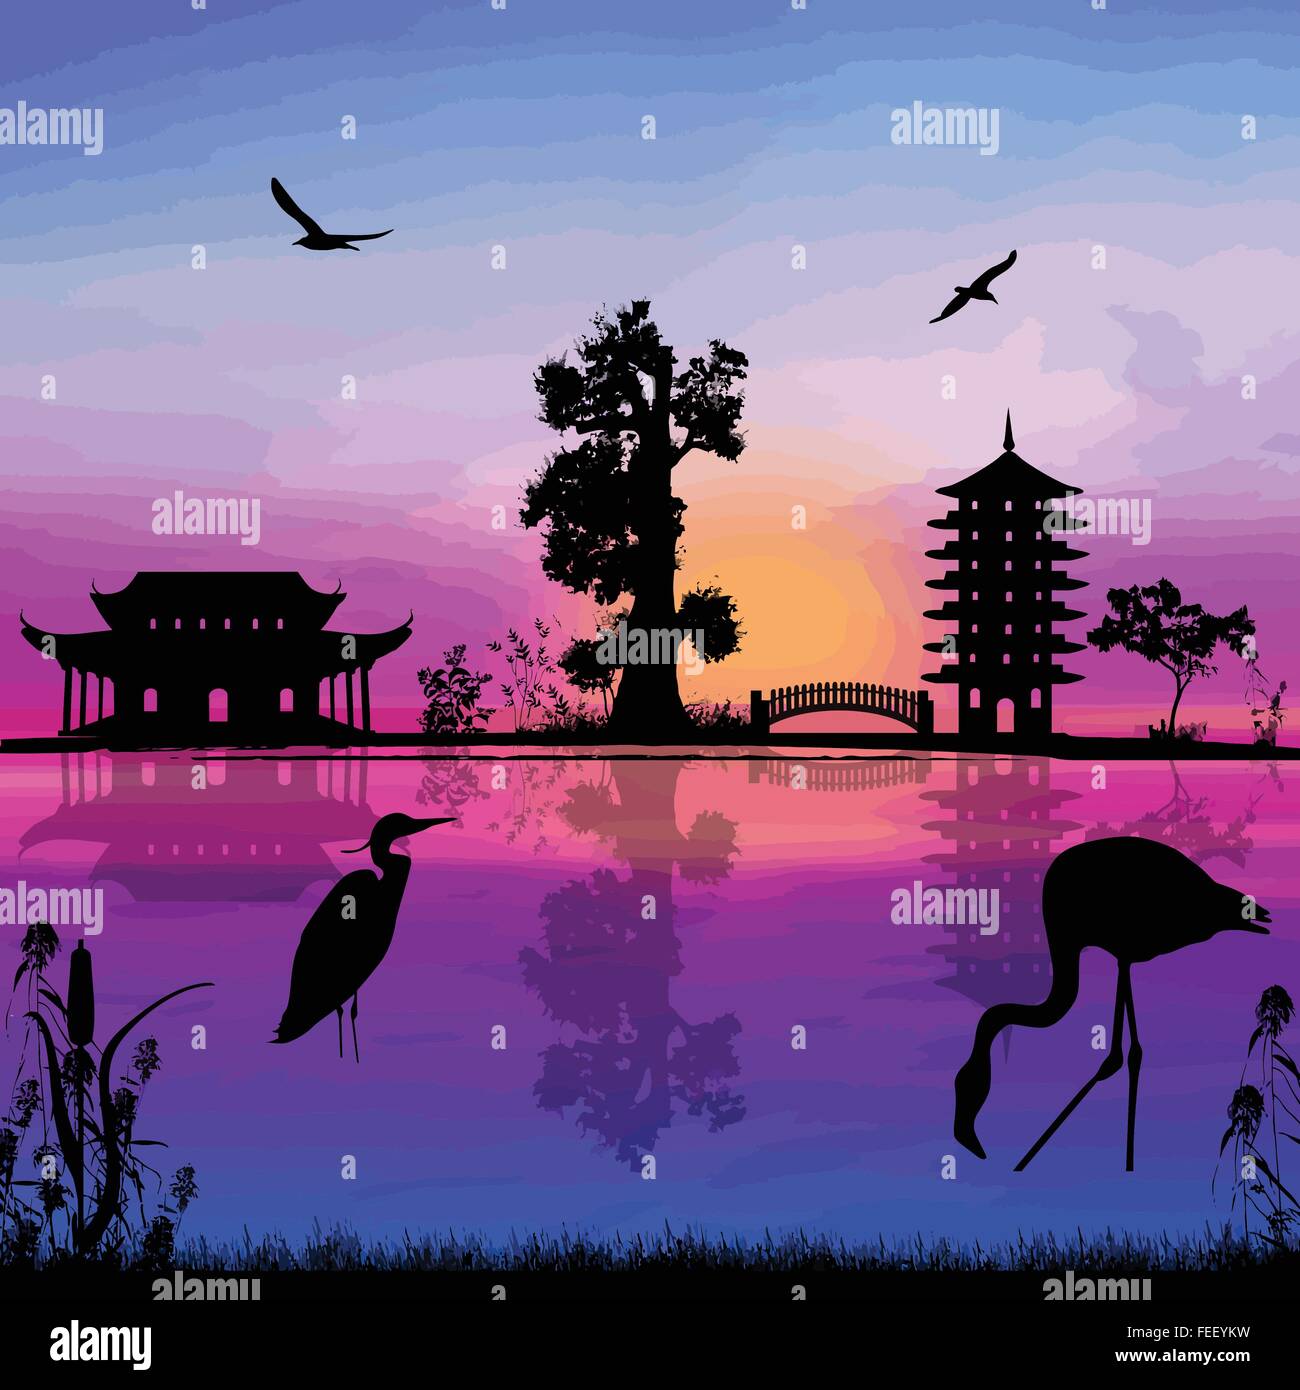 Beautiful asian landscape near water on sunset, vector illustration Stock Vector